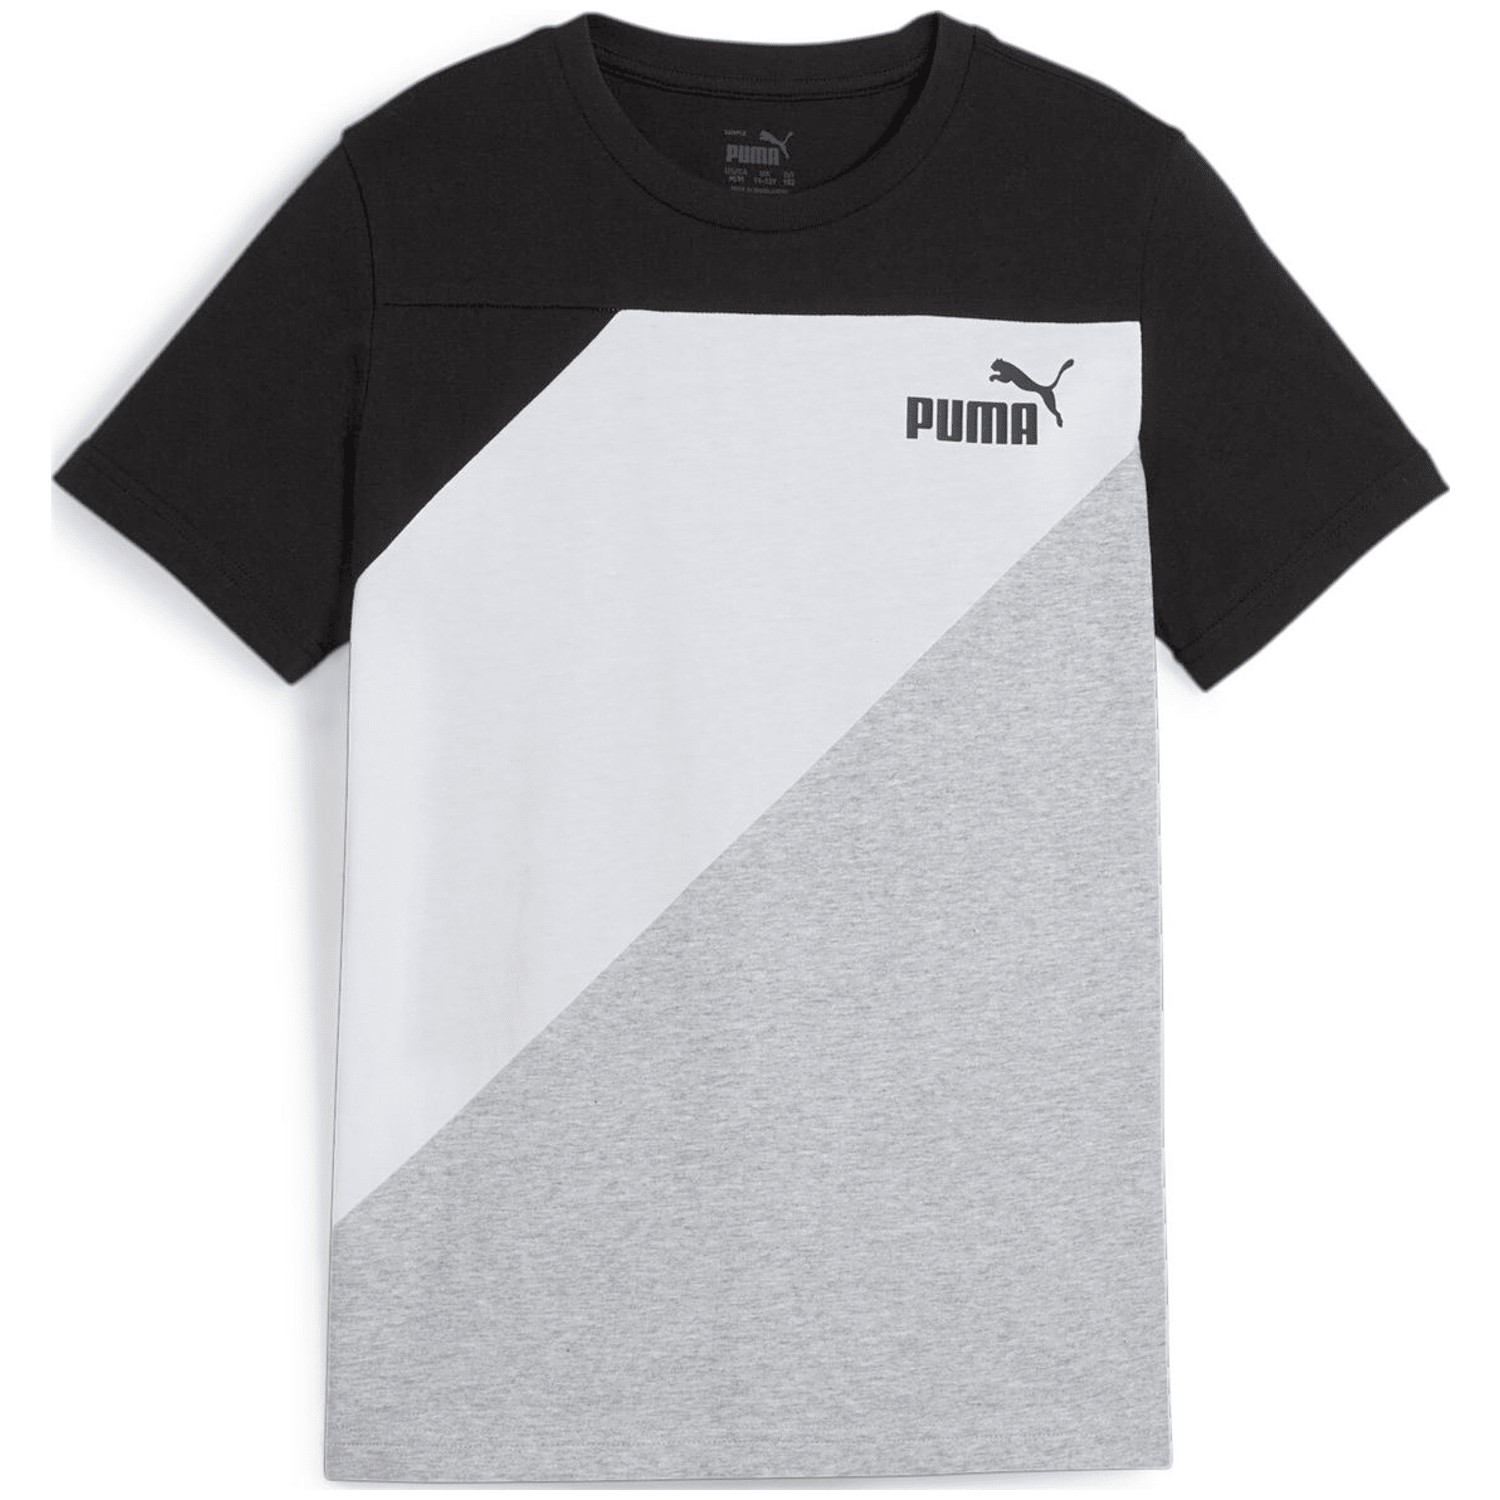 Puma Power Jungen T-Shirt